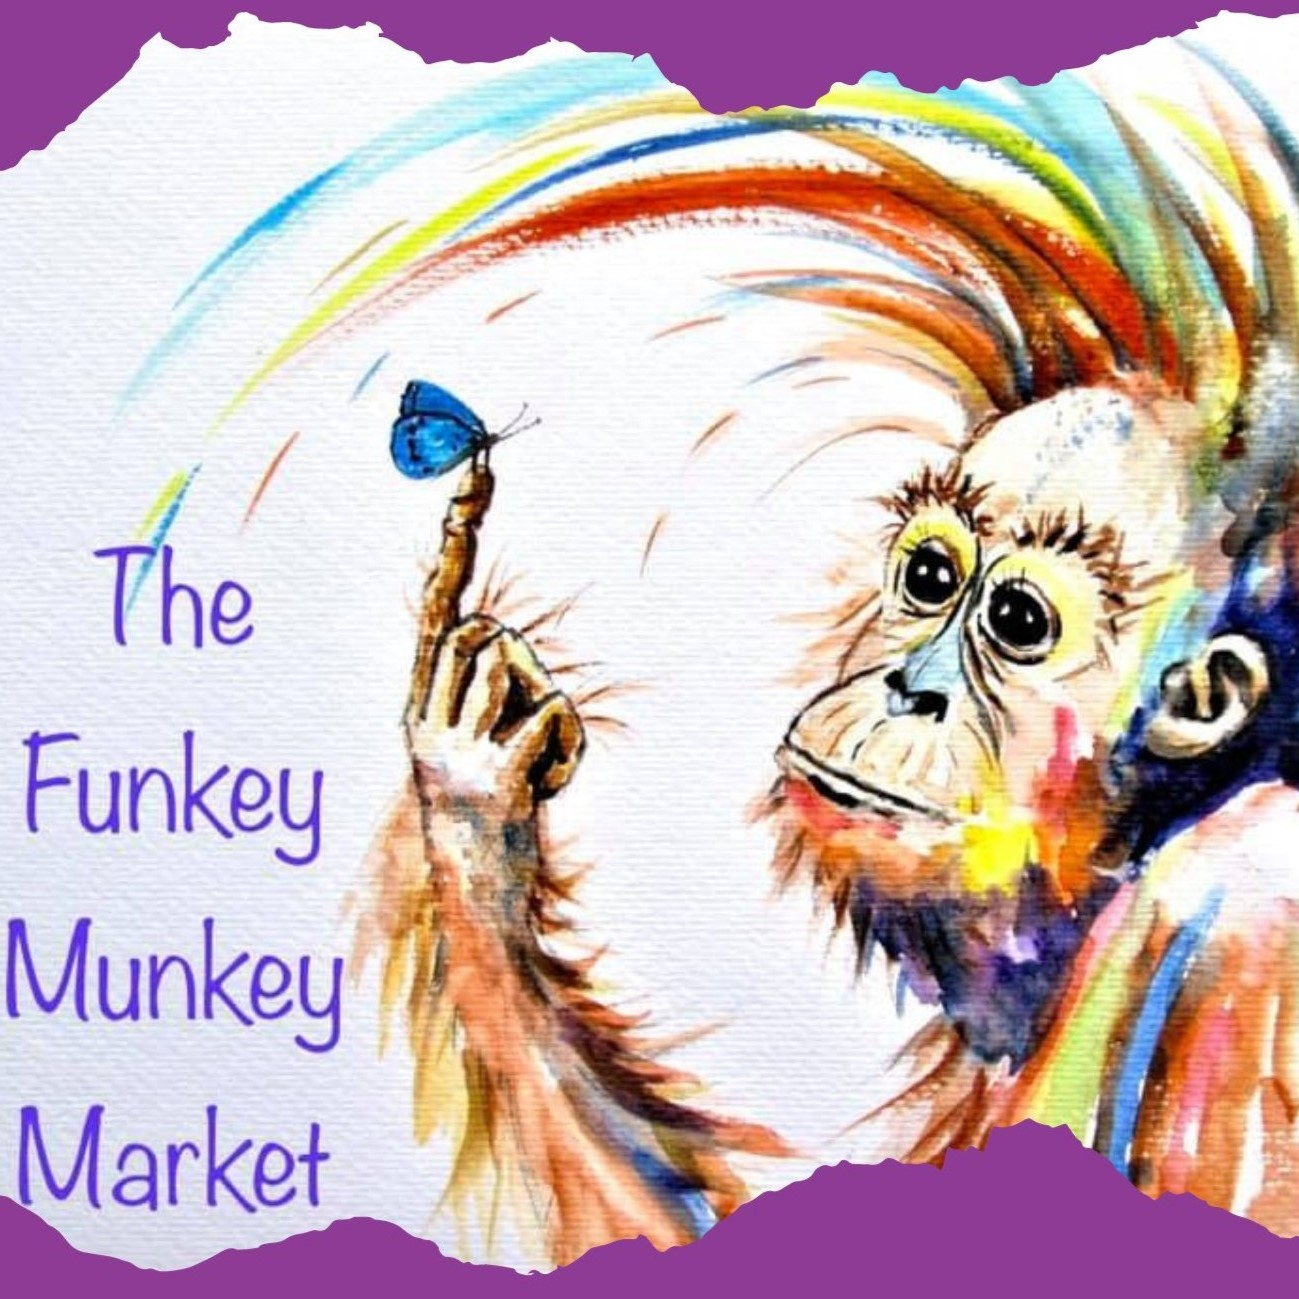 The Funkey Munkey Market